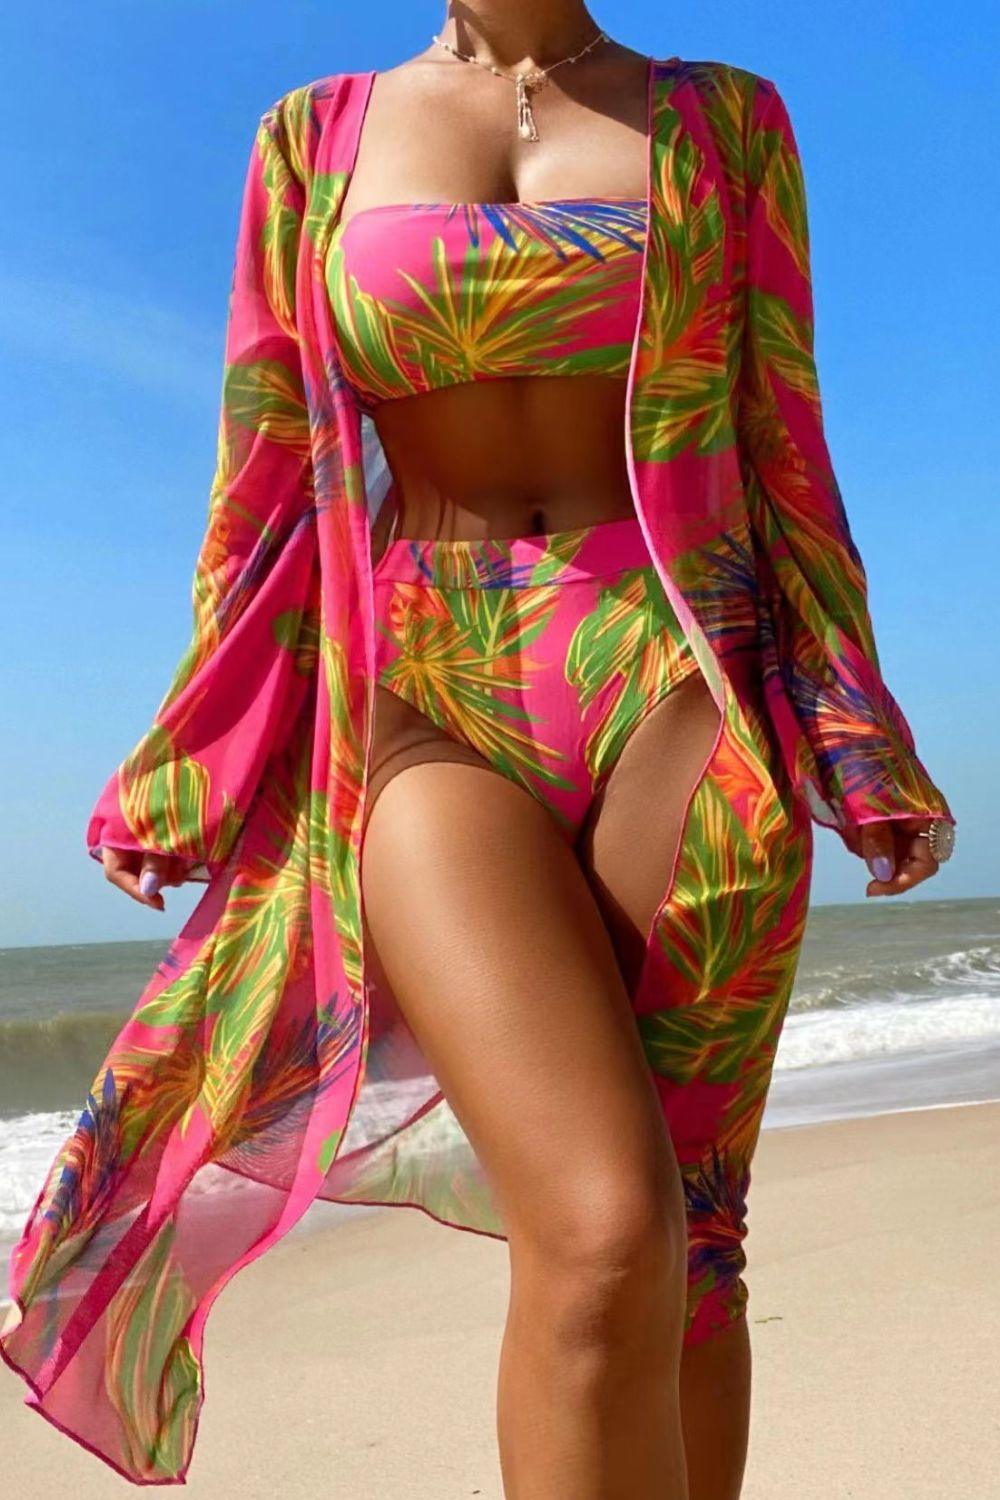 a woman in a bikini on the beach